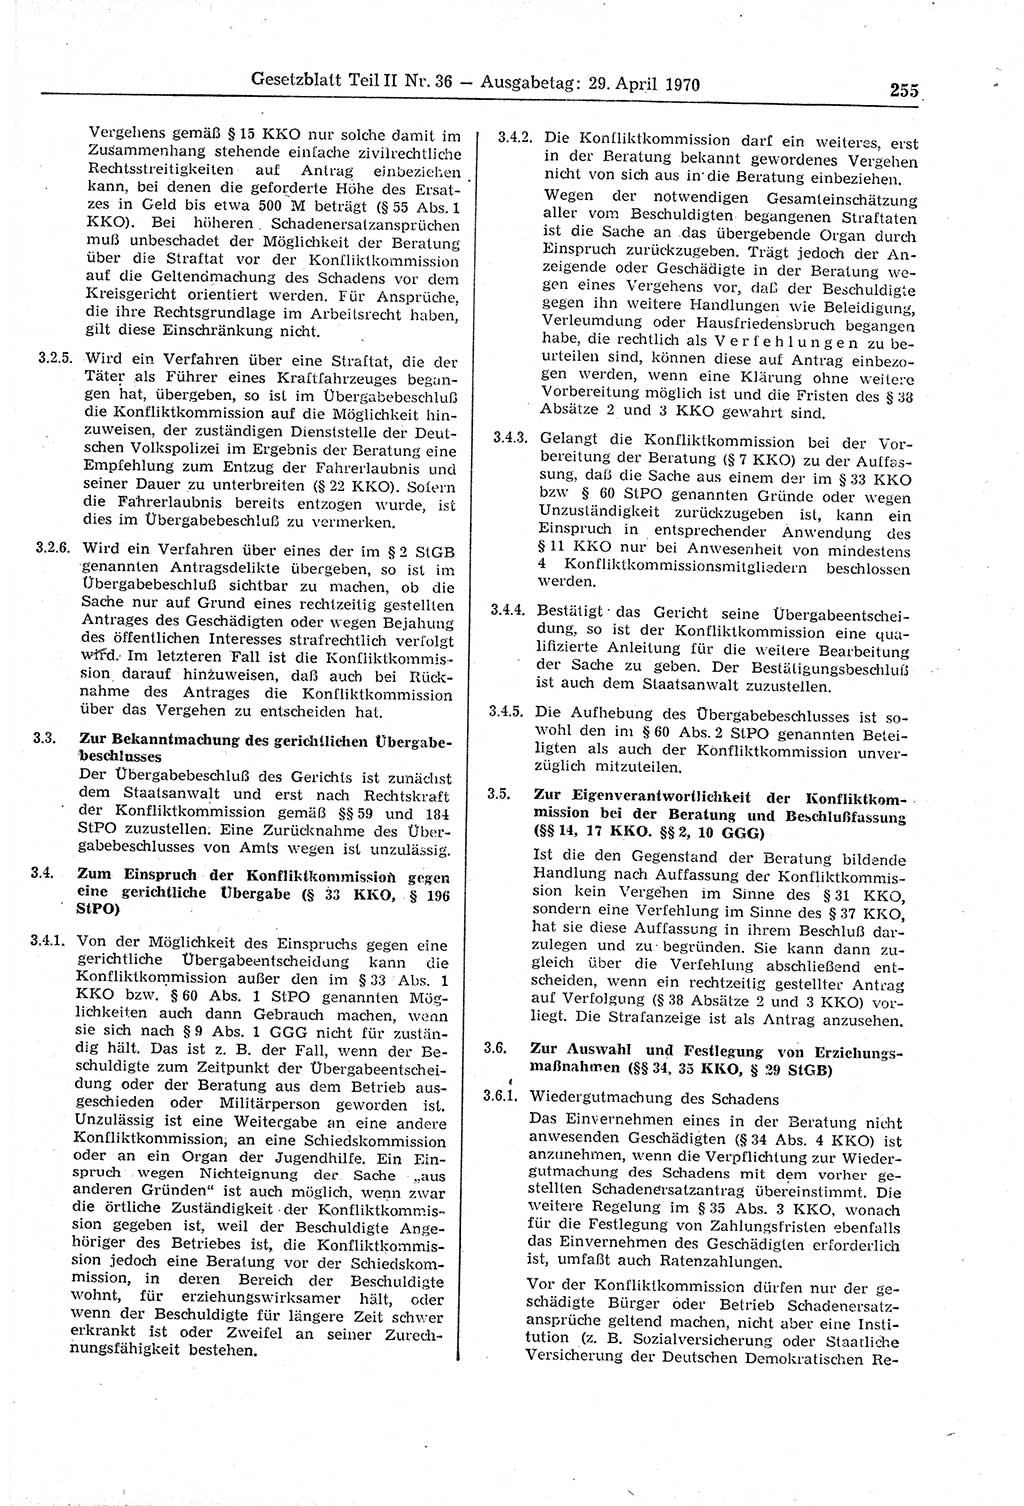 Gesetzblatt (GBl.) der Deutschen Demokratischen Republik (DDR) Teil ⅠⅠ 1970, Seite 255 (GBl. DDR ⅠⅠ 1970, S. 255)